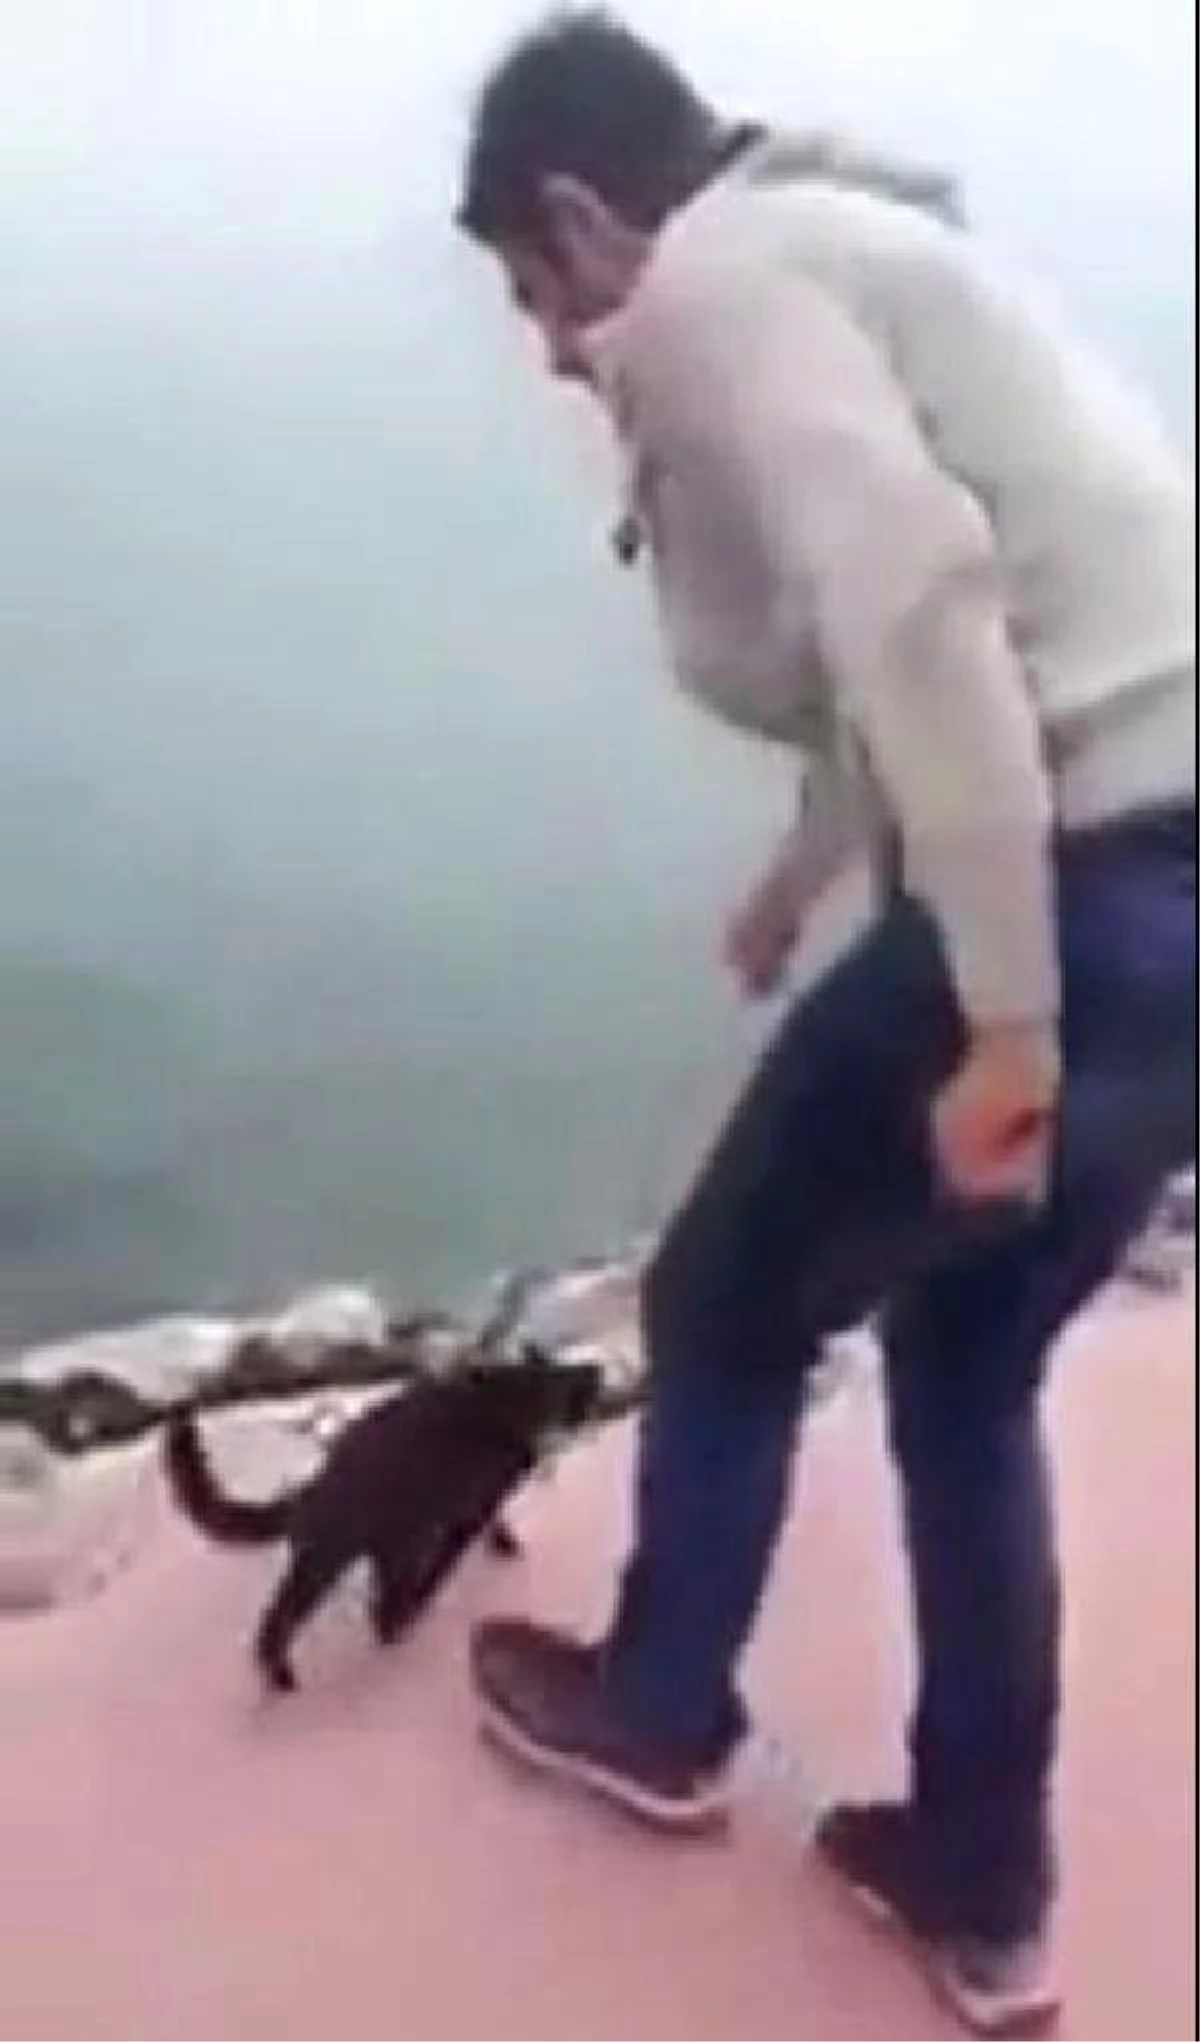 Polis, Kediyi Tekmeleyerek Denize Atan Kişinin Peşinde